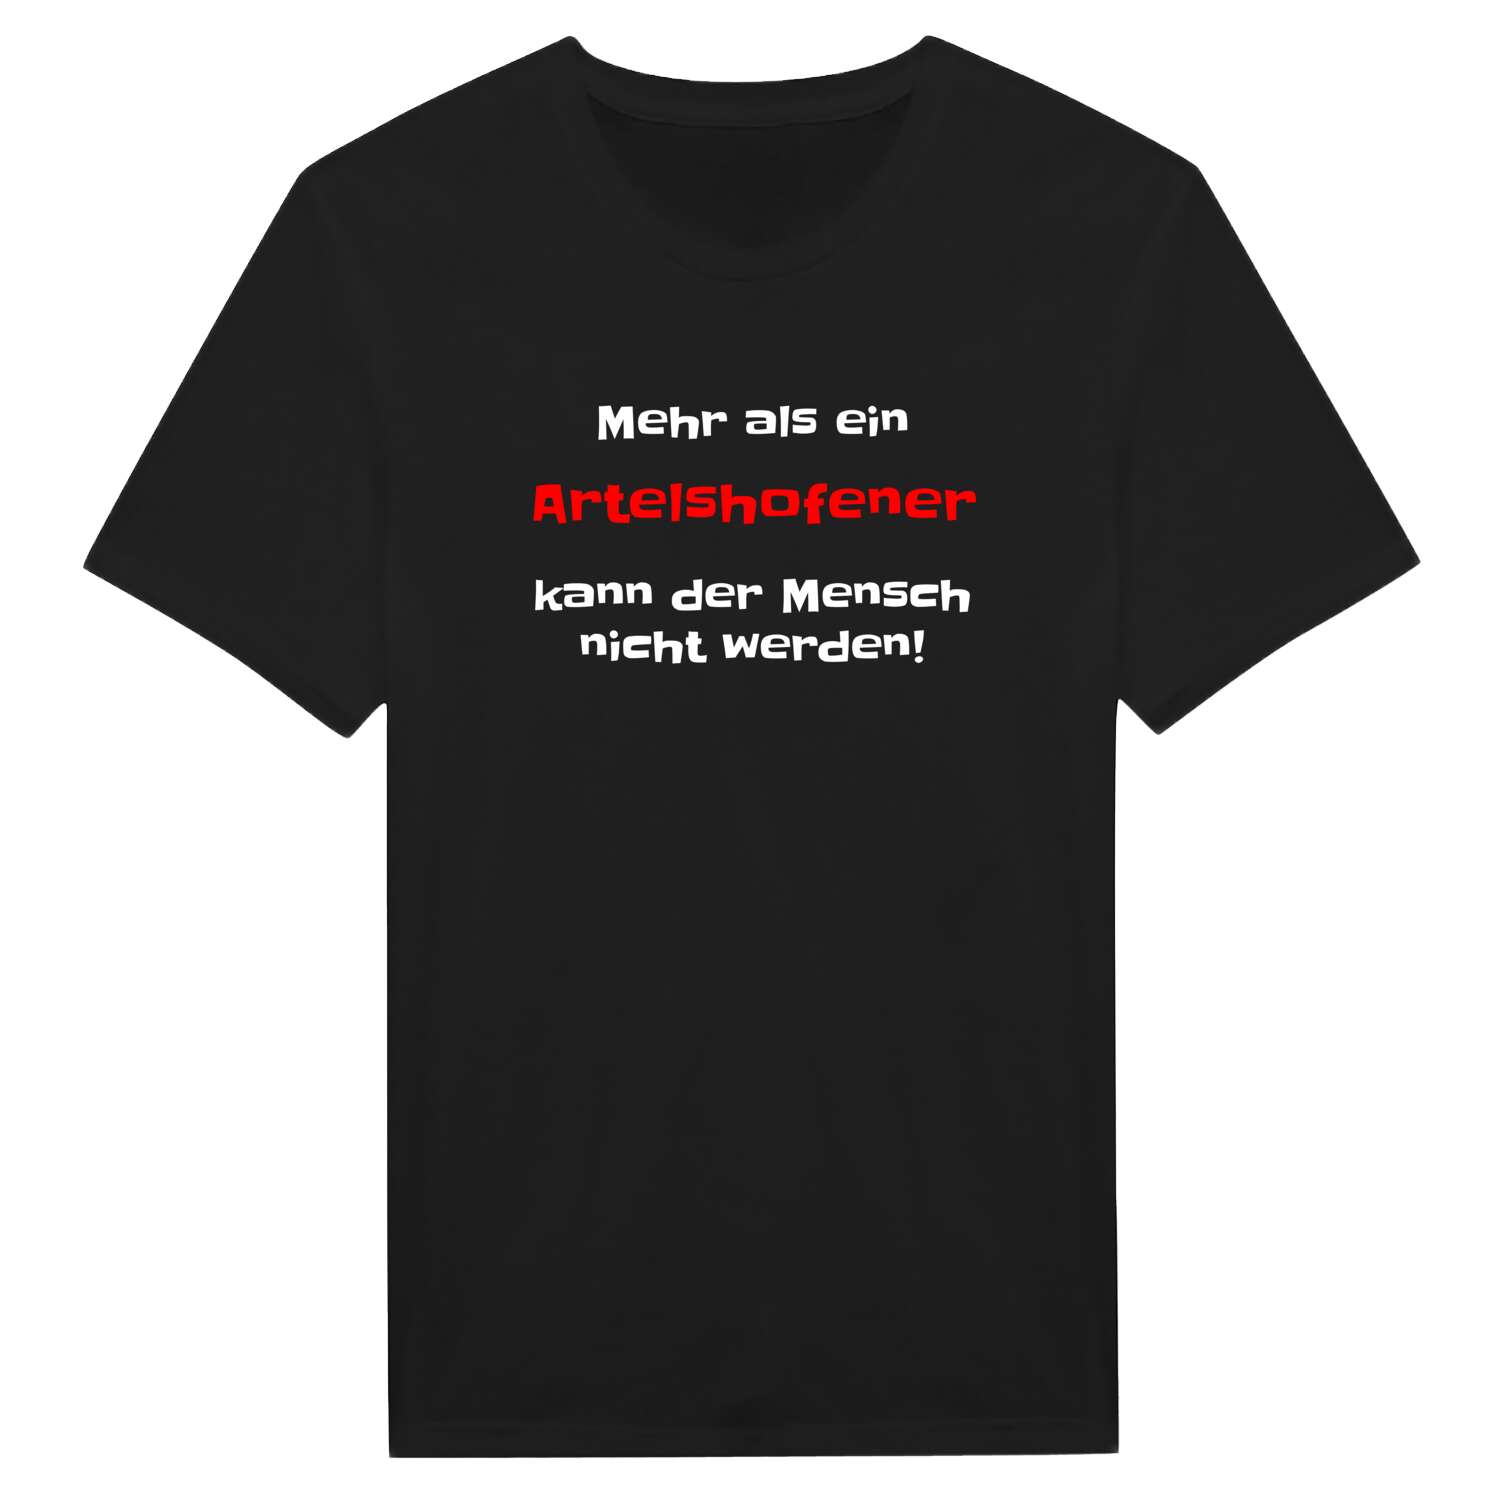 Artelshofen T-Shirt »Mehr als ein«